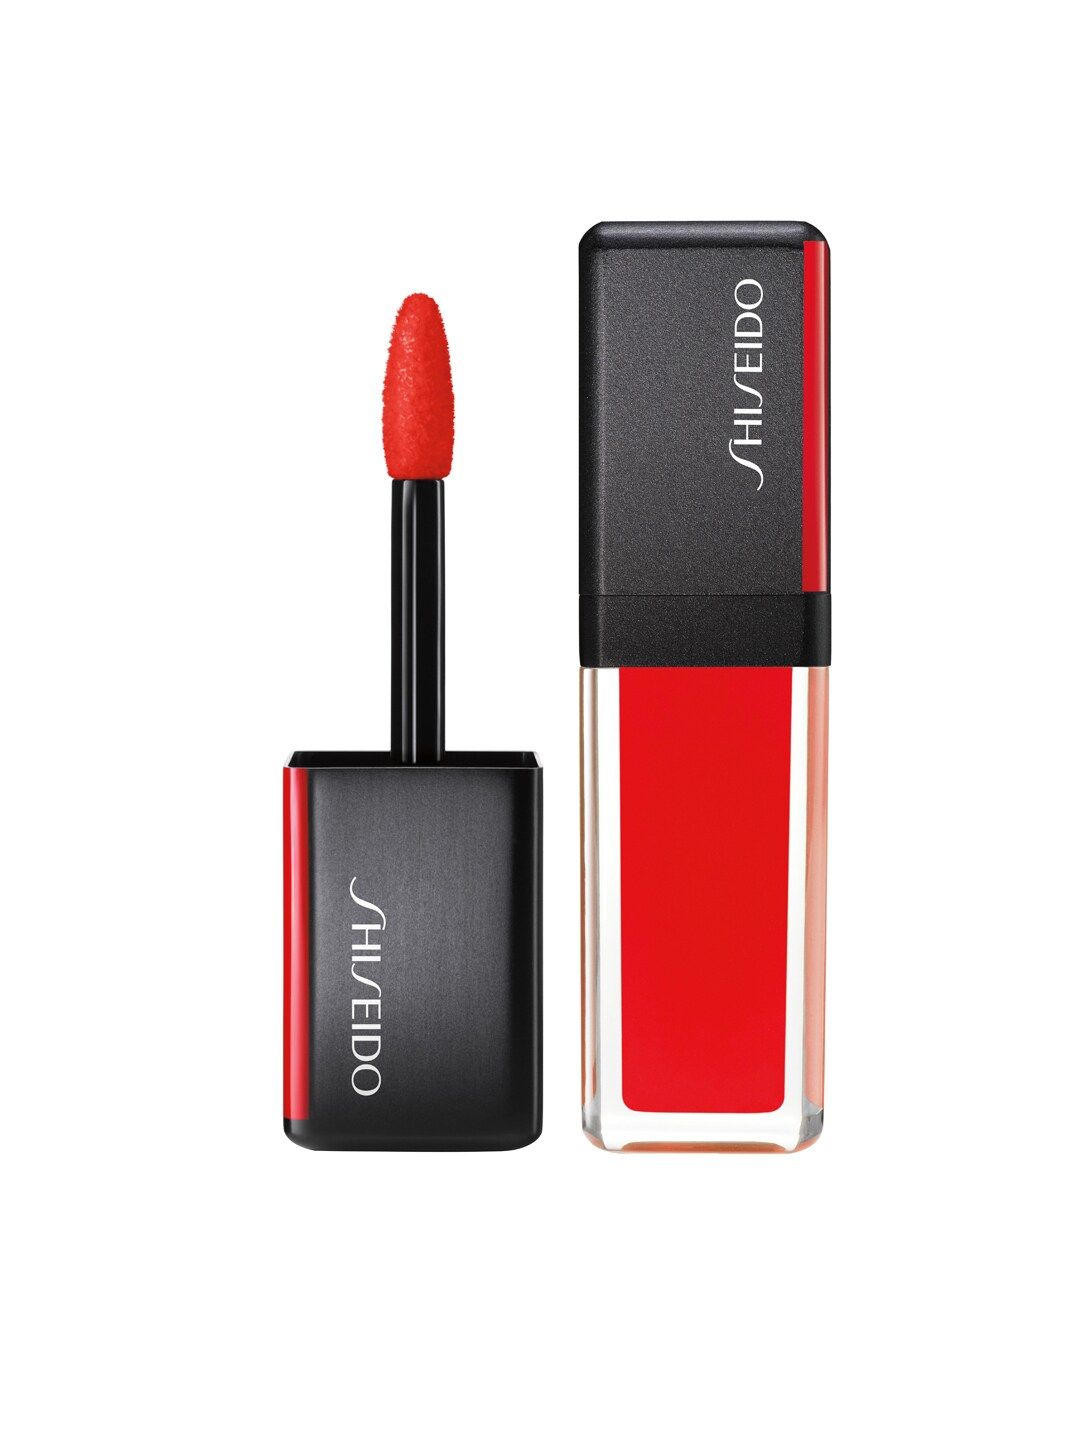 SHISEIDO 305 Red Flicker LacquerInk Lip Shine 6ml Price in India